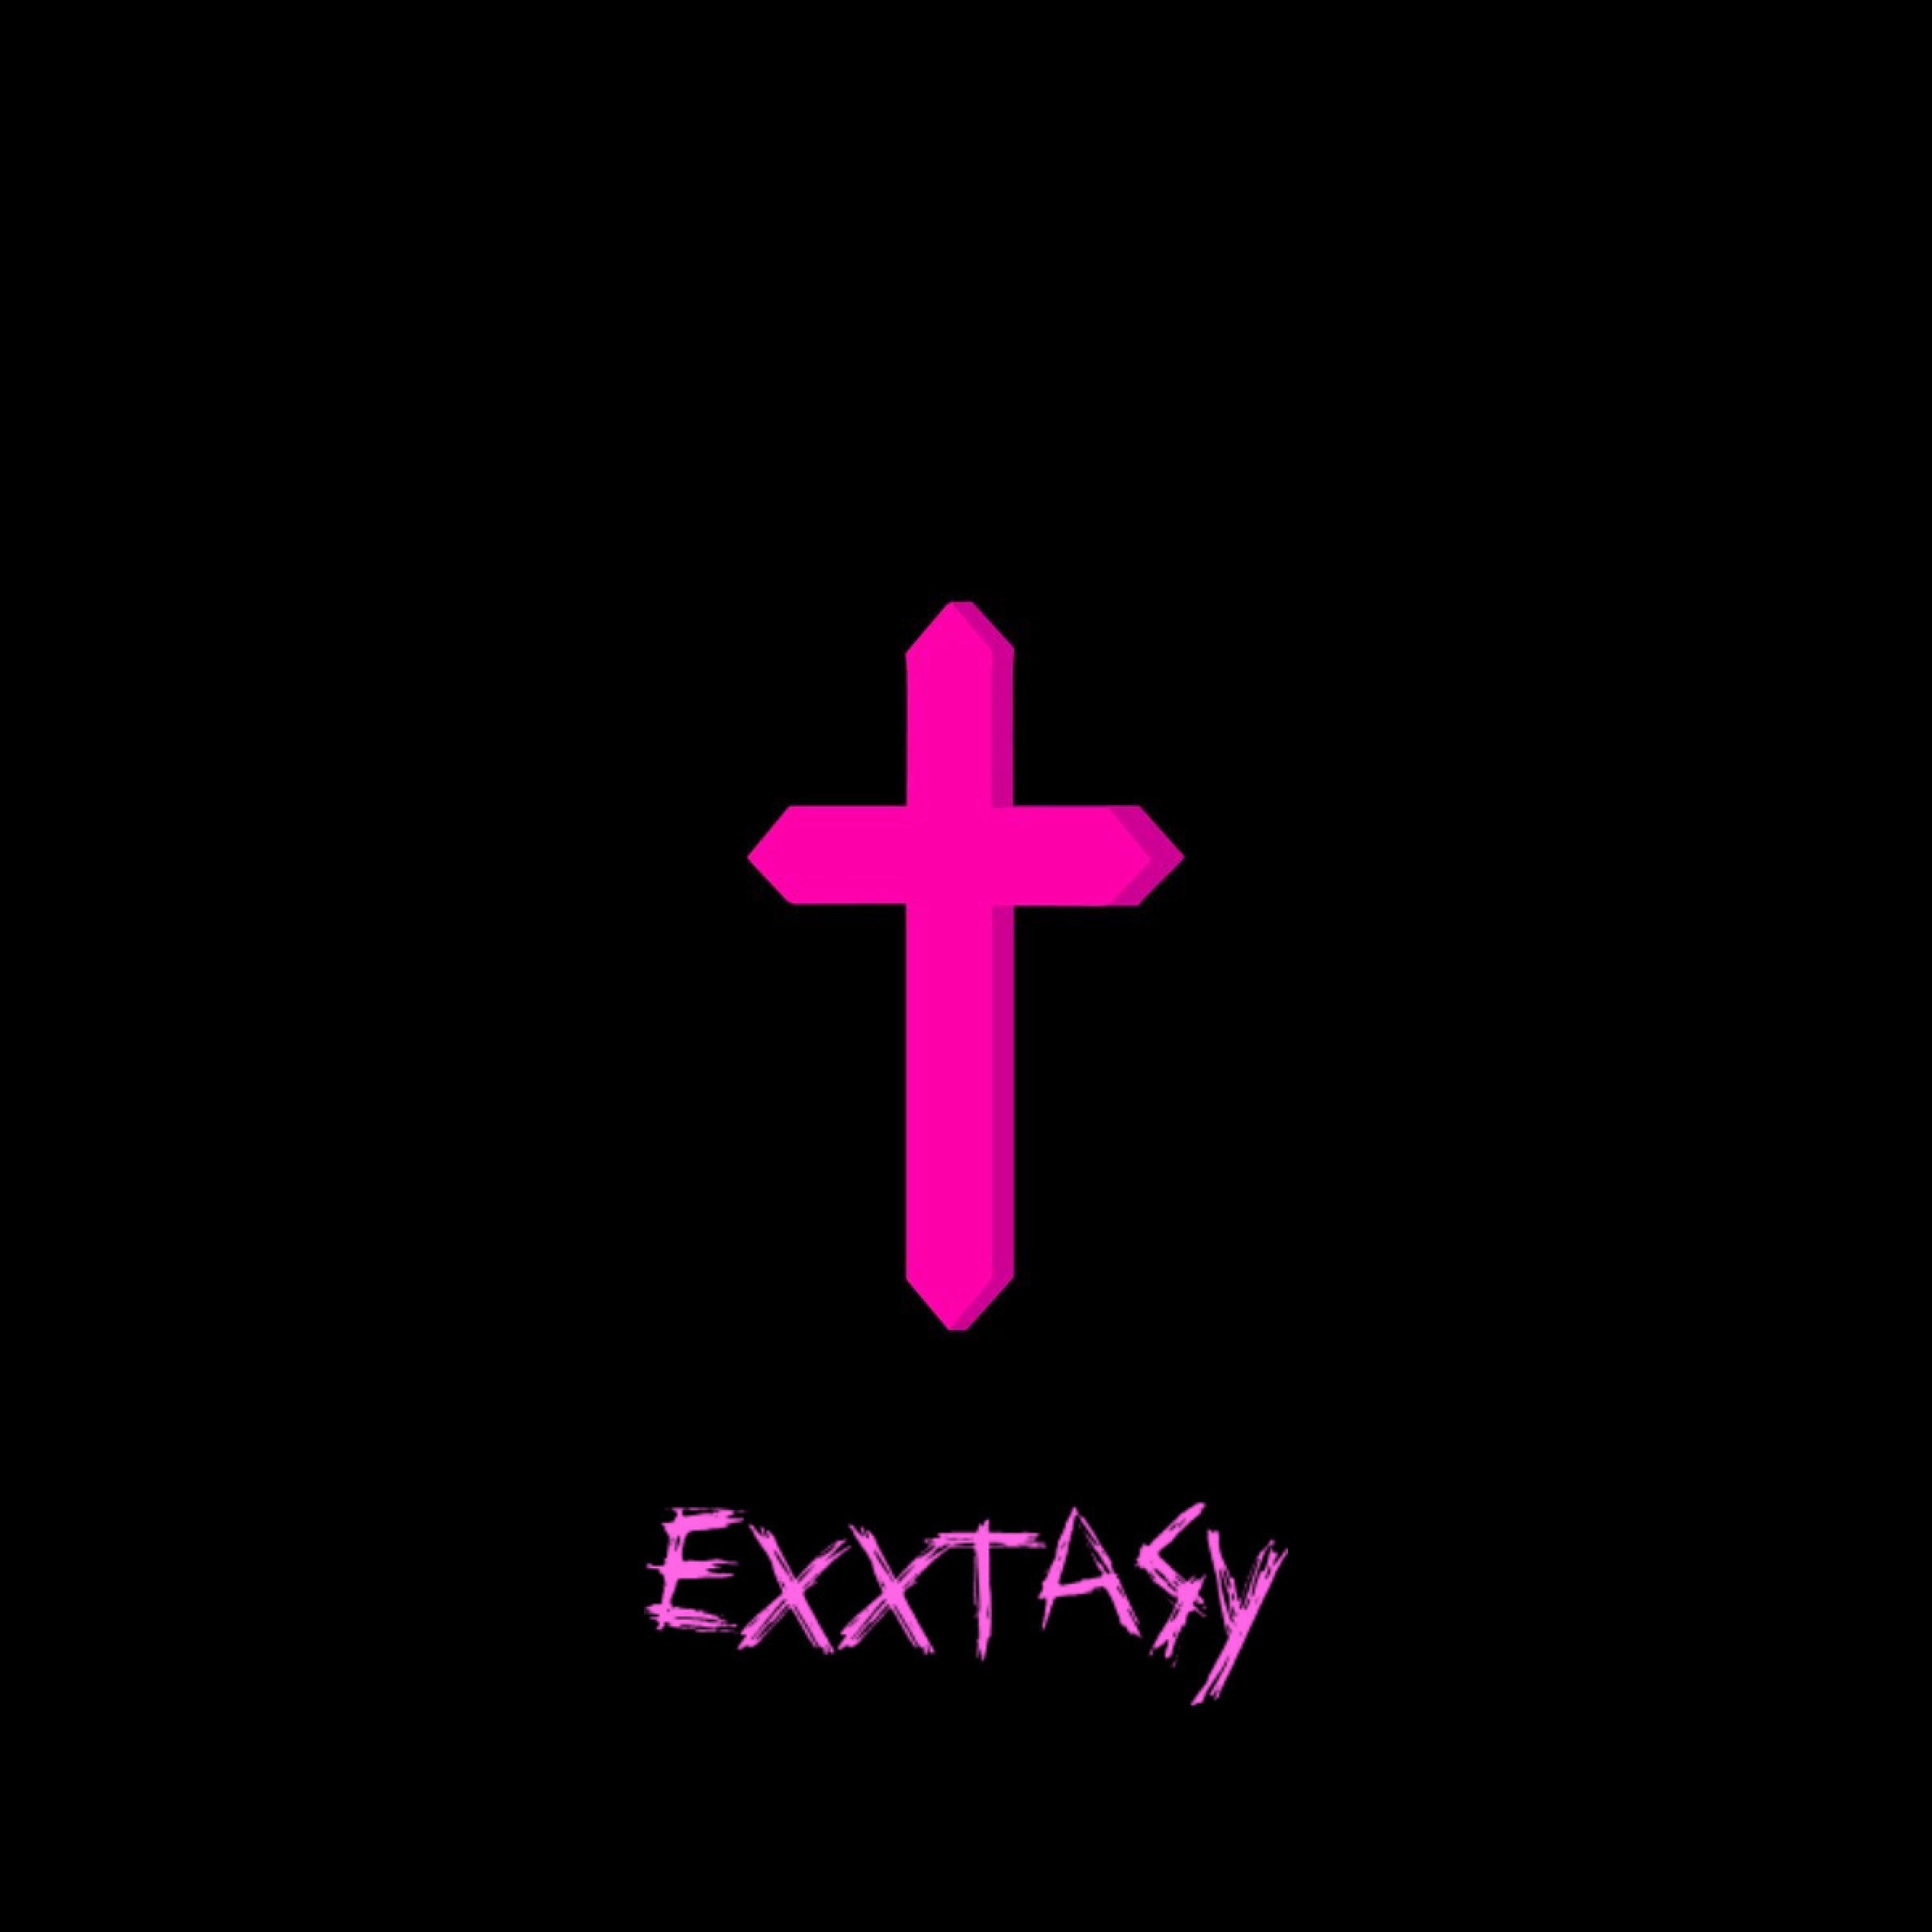 Exxtasy - Damage